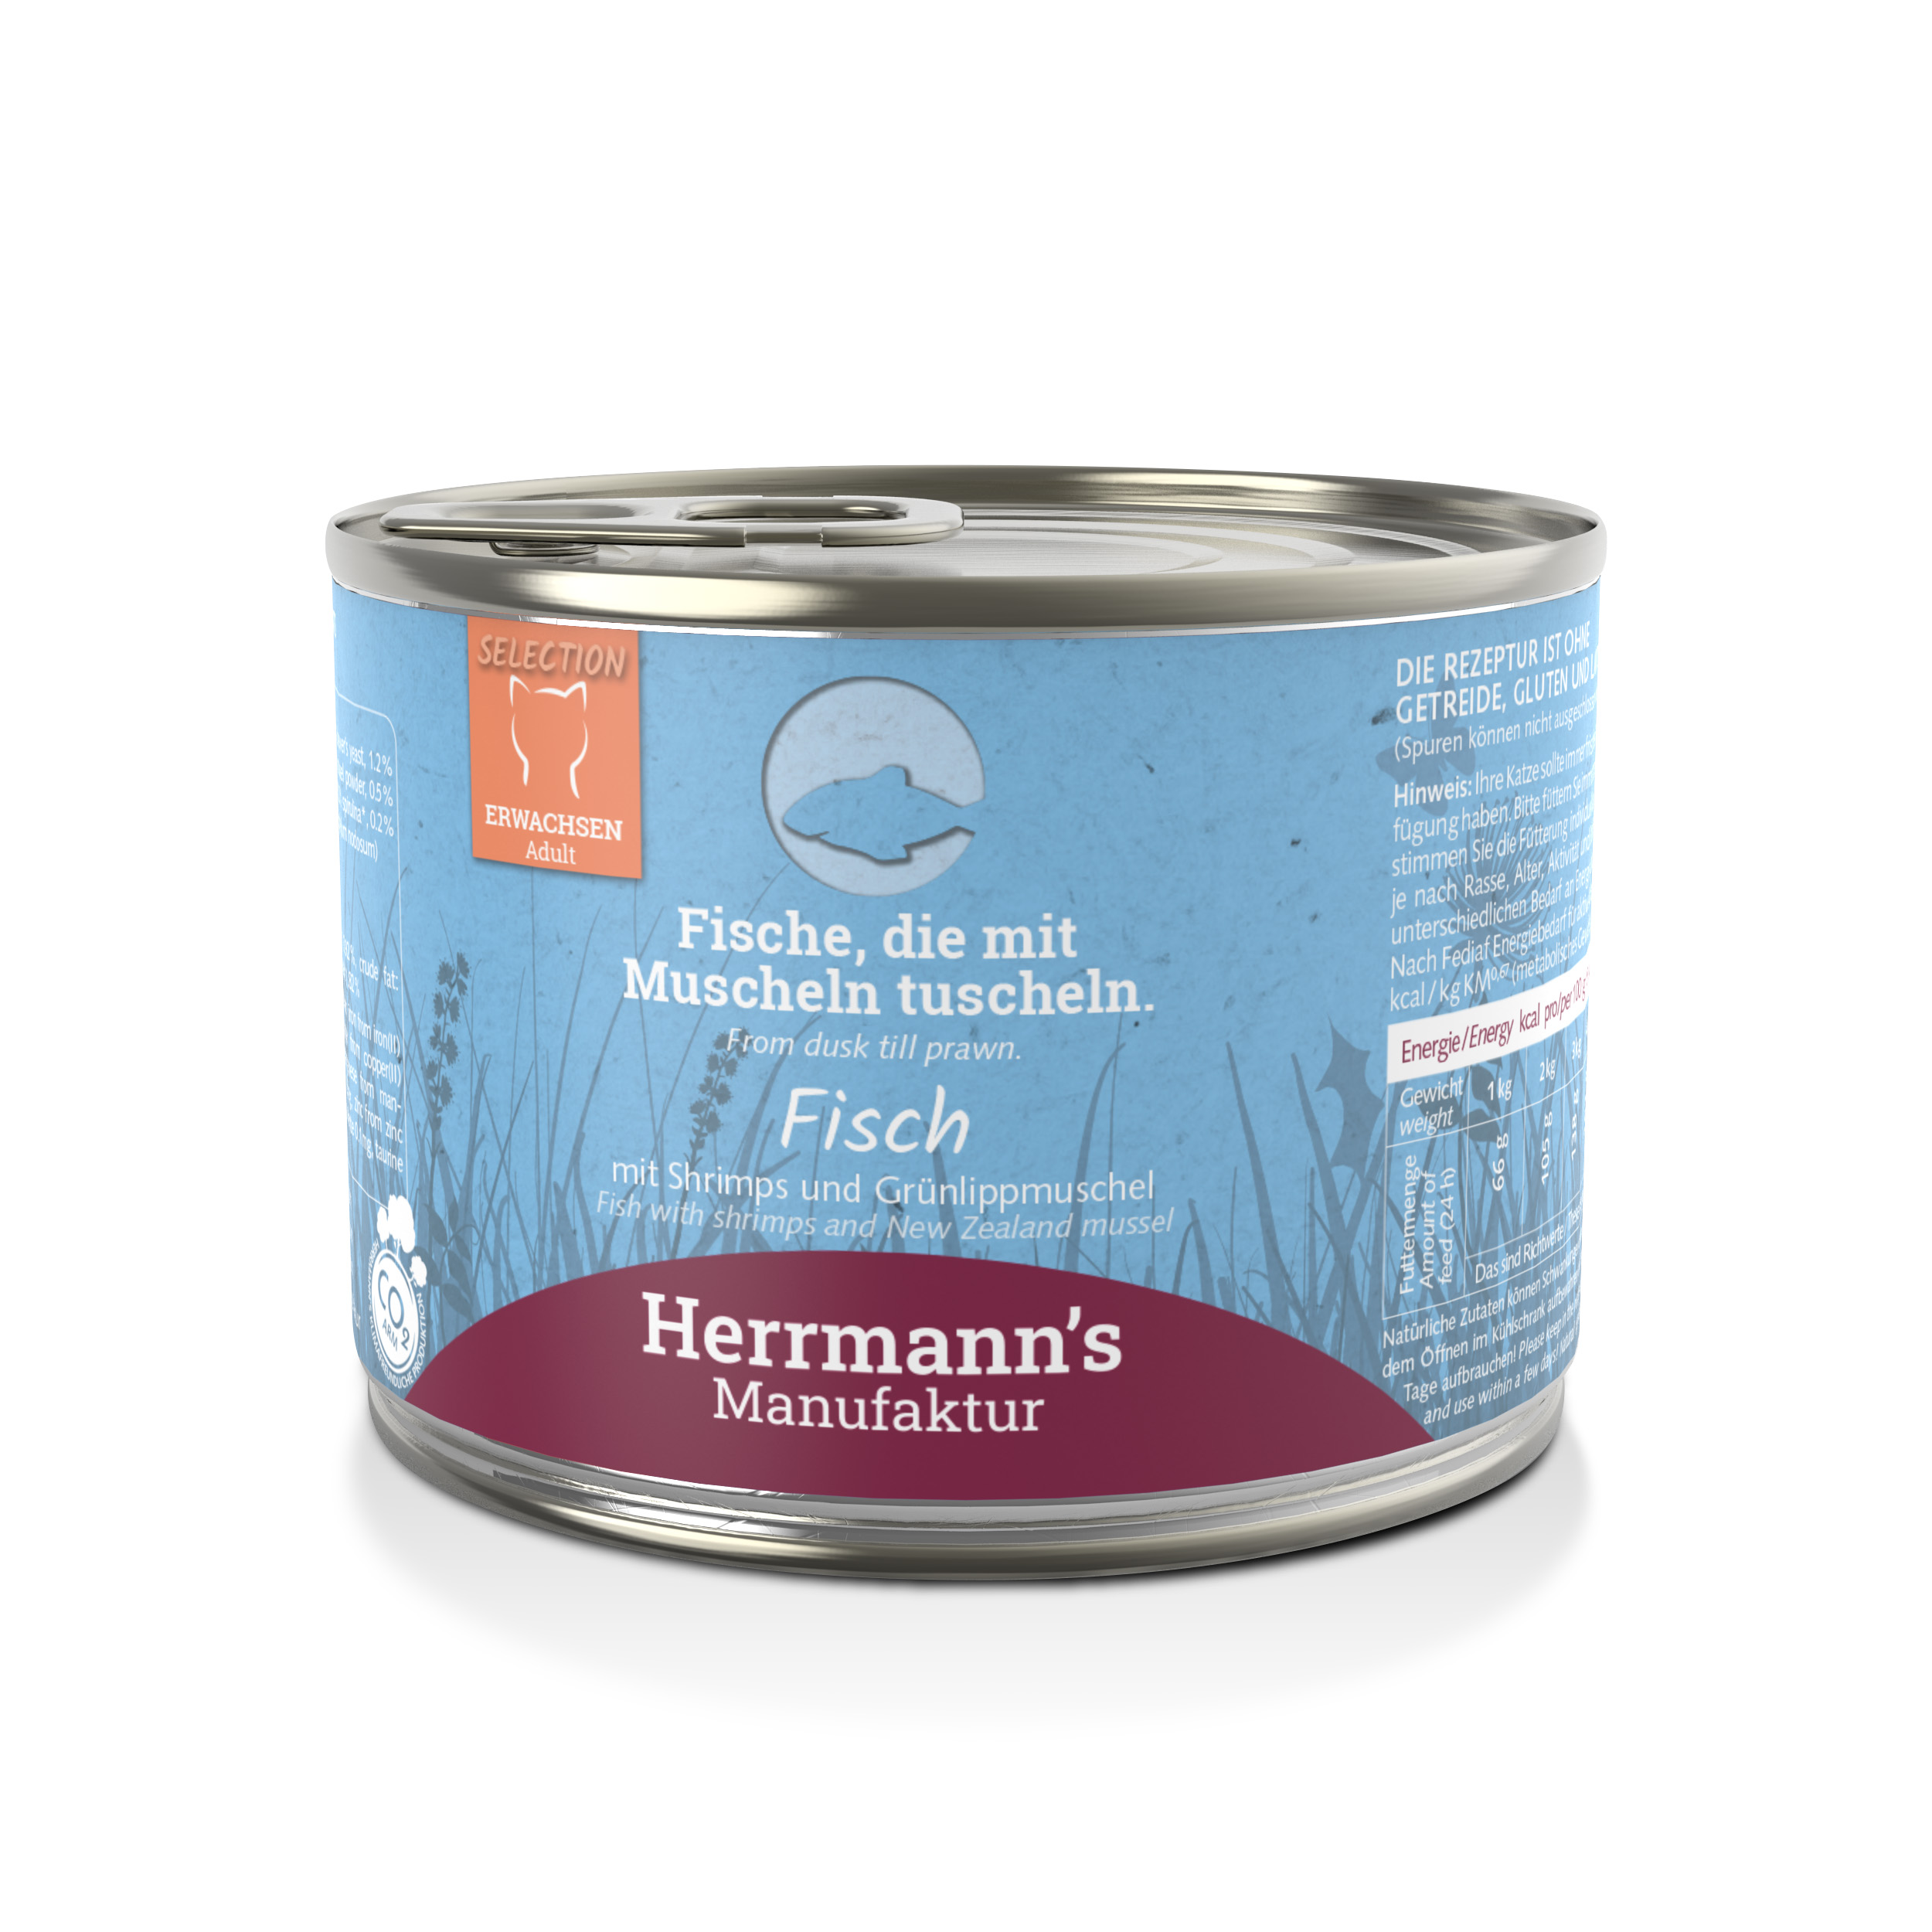 Fisch NICHT BIO, Shrimps, Grünlippmuschel 200g Gluten-, getreidefrei Herrmann's - Bild 1